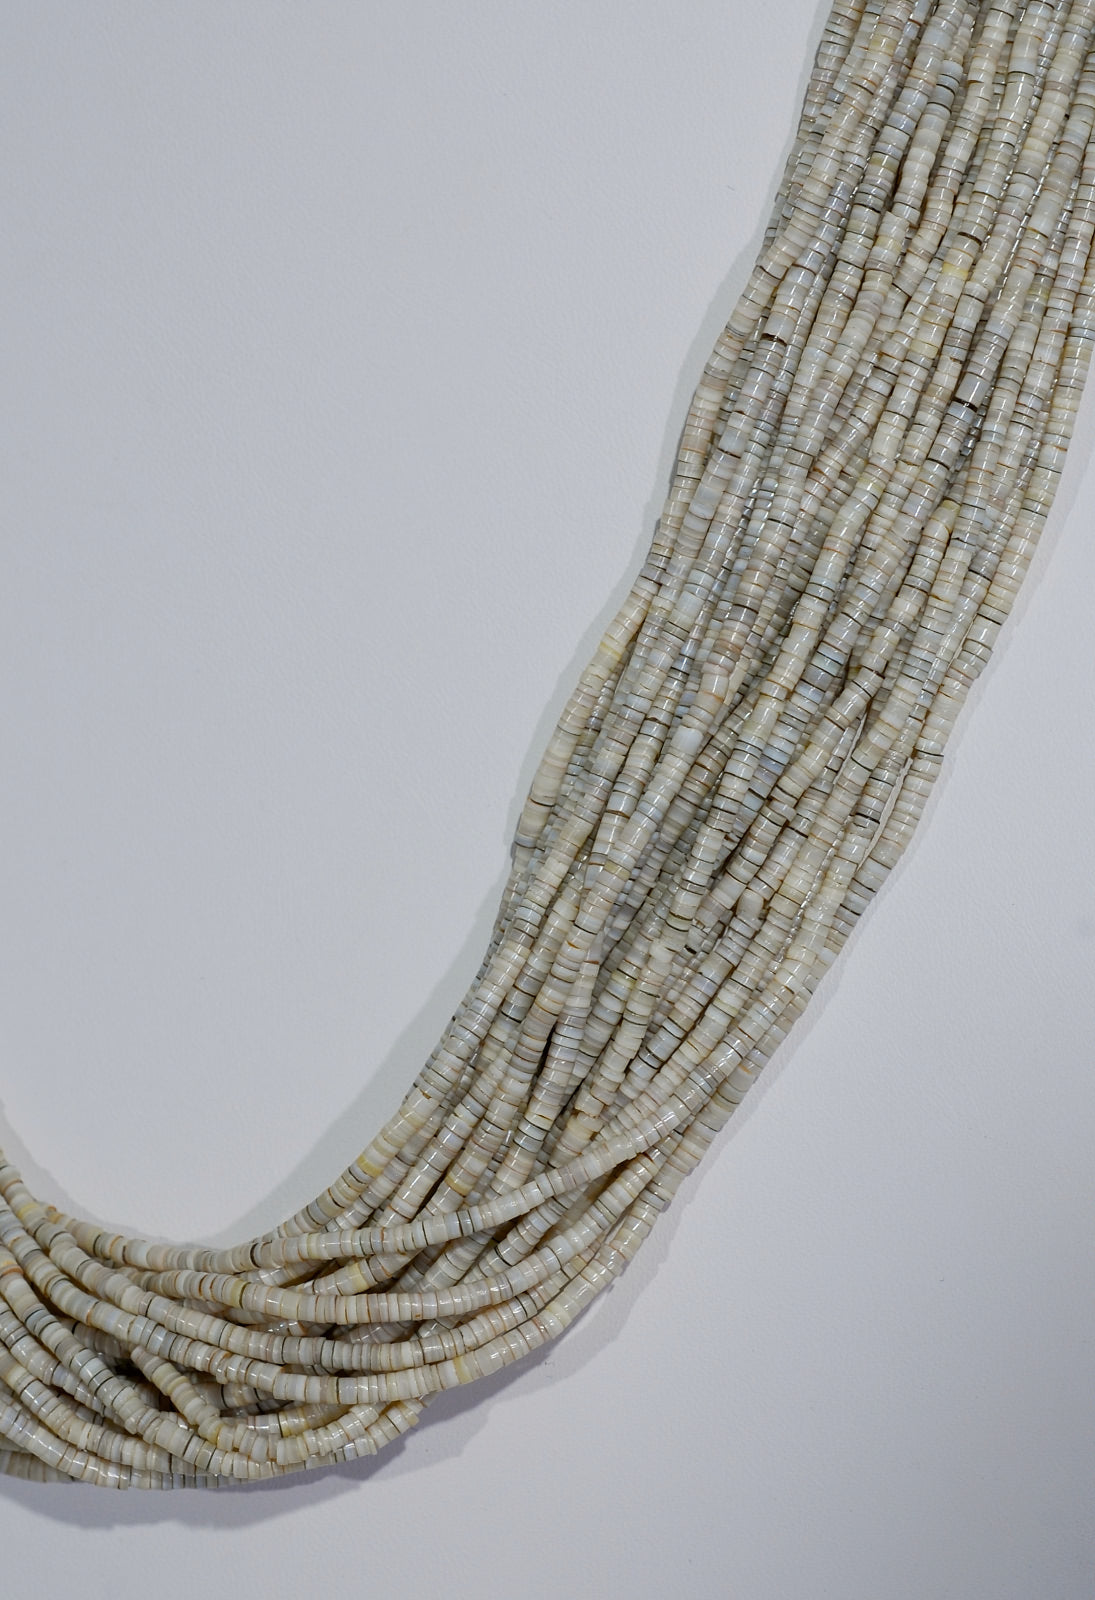 Vintage 29-Strand Heishi Necklace with Pueblo Wrap